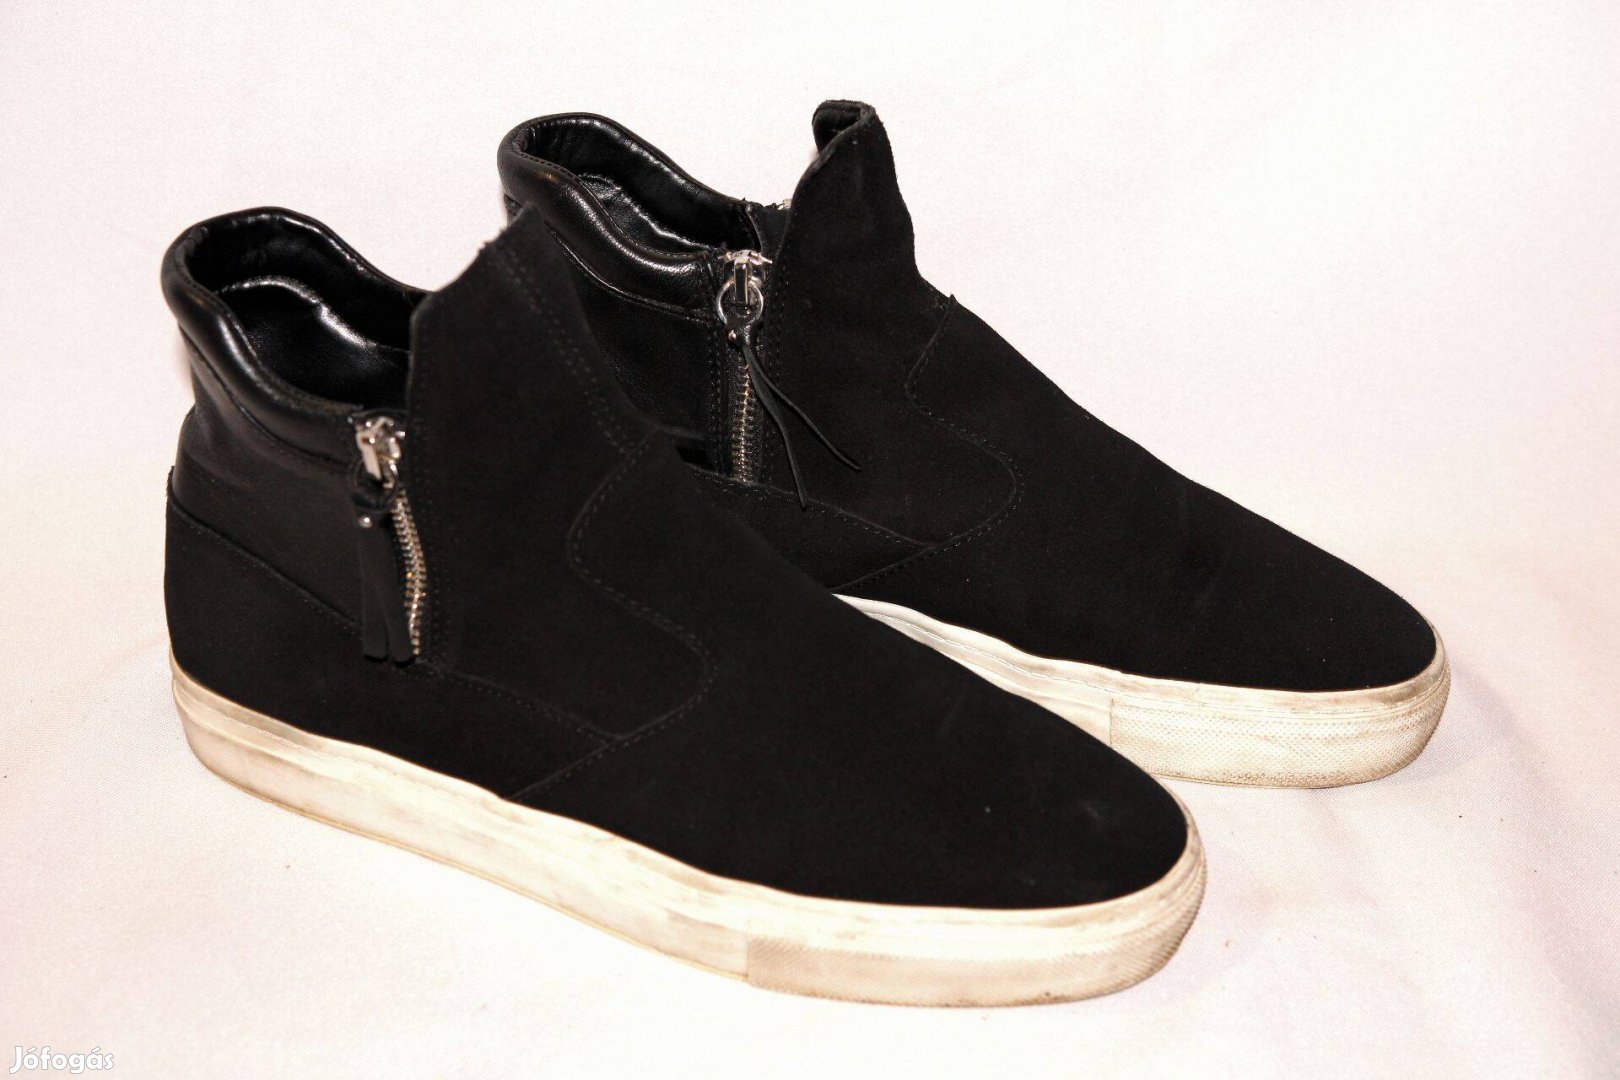 Zara cipő fekete magasszárú vastagtalpú sportos cipő 39